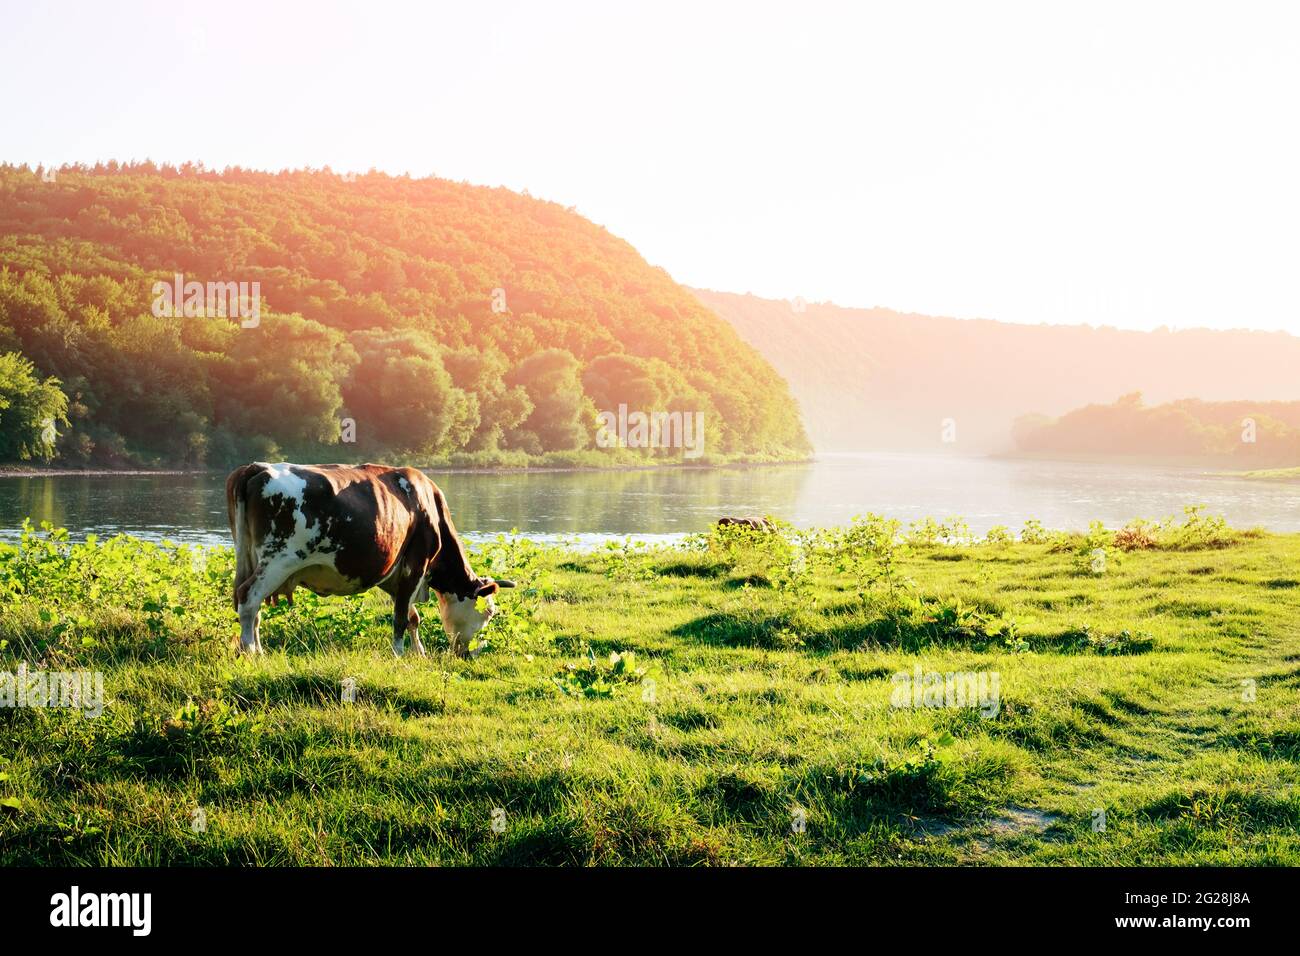 Arrosage de la vache dans la rivière. Photographie d'animaux Banque D'Images